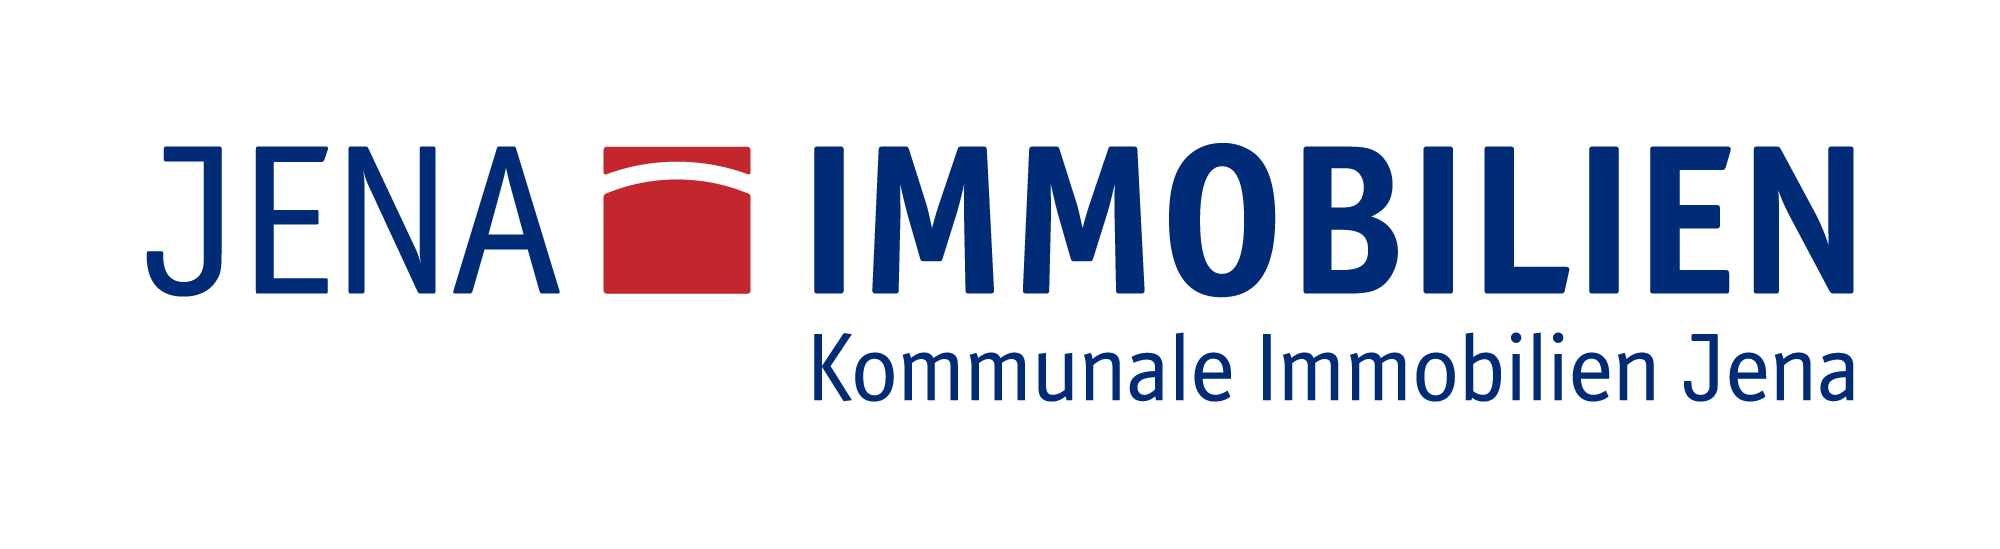 Logo Kommunale Immobilien Jena